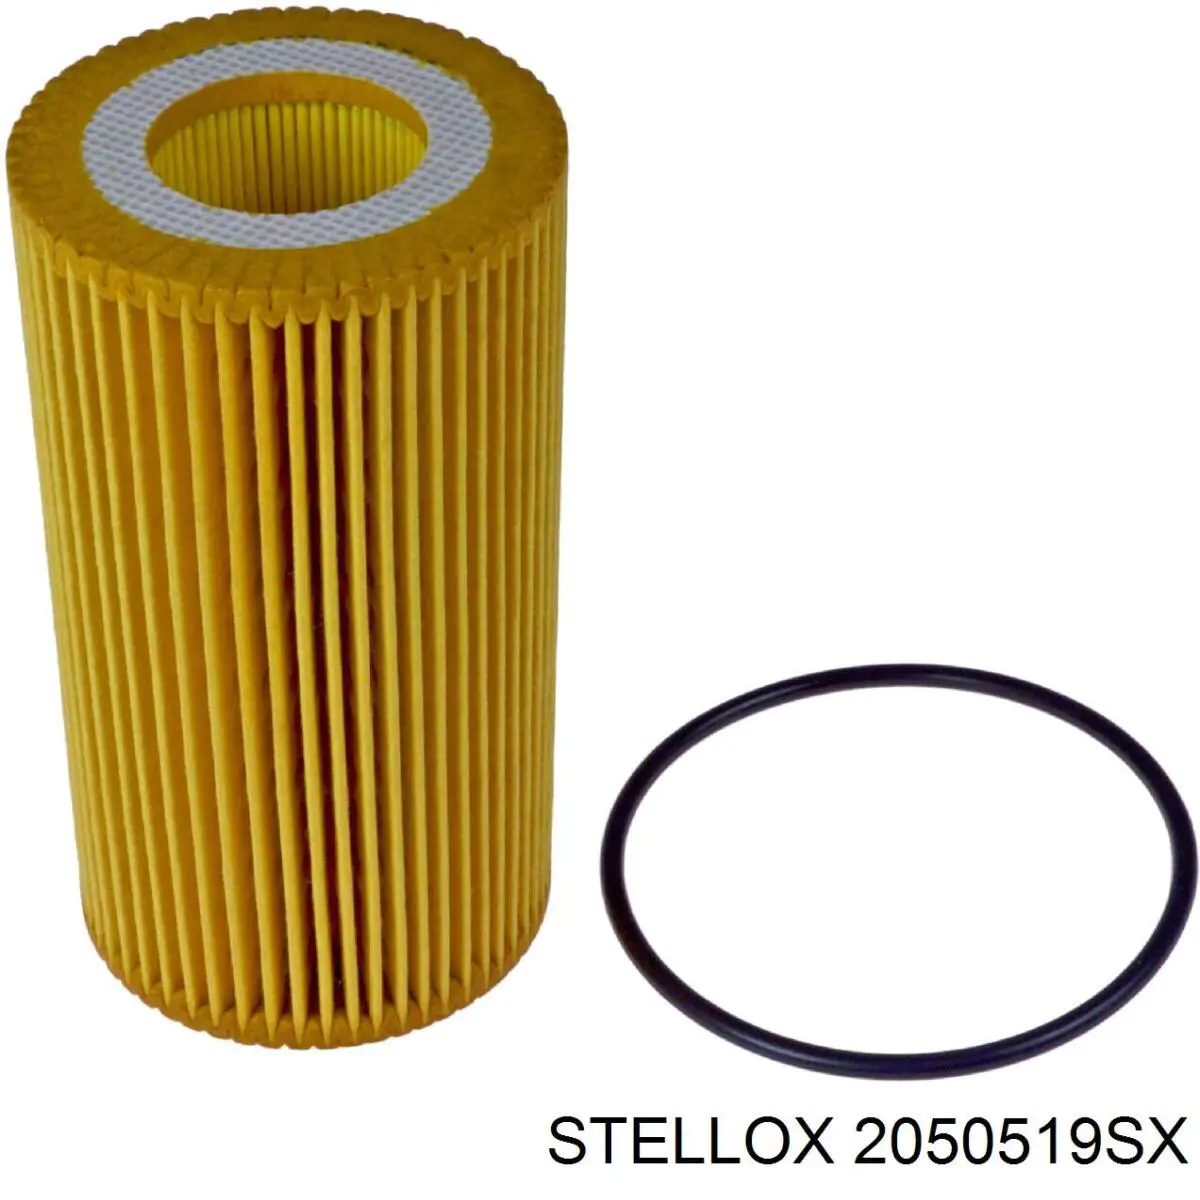 2050519SX Stellox filtro de aceite